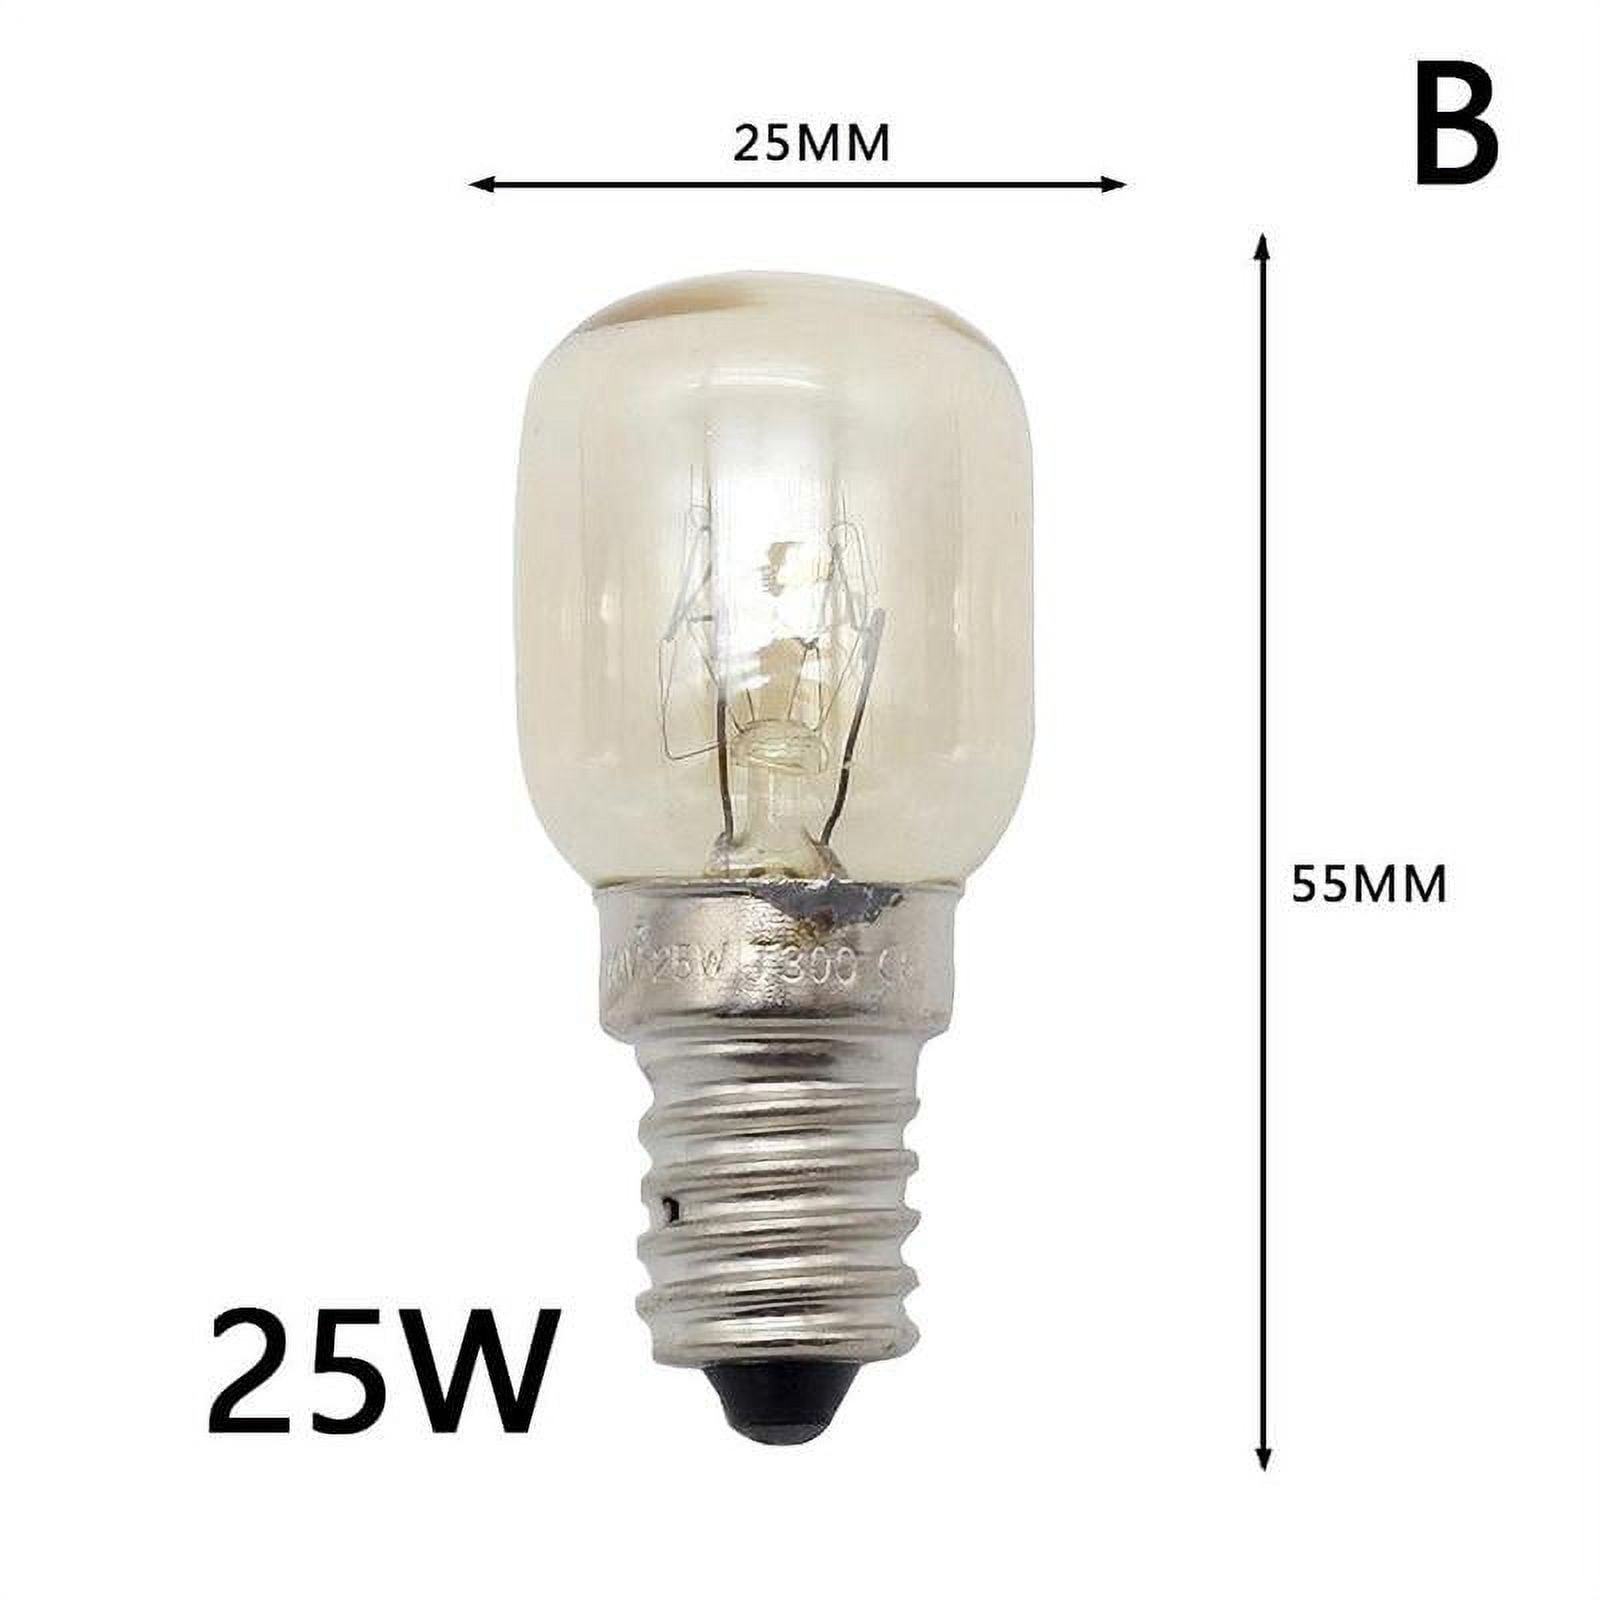 1pc E14 25w 15w Lamps Oven Light Cooker Heat Bulb 220-240v V2C5